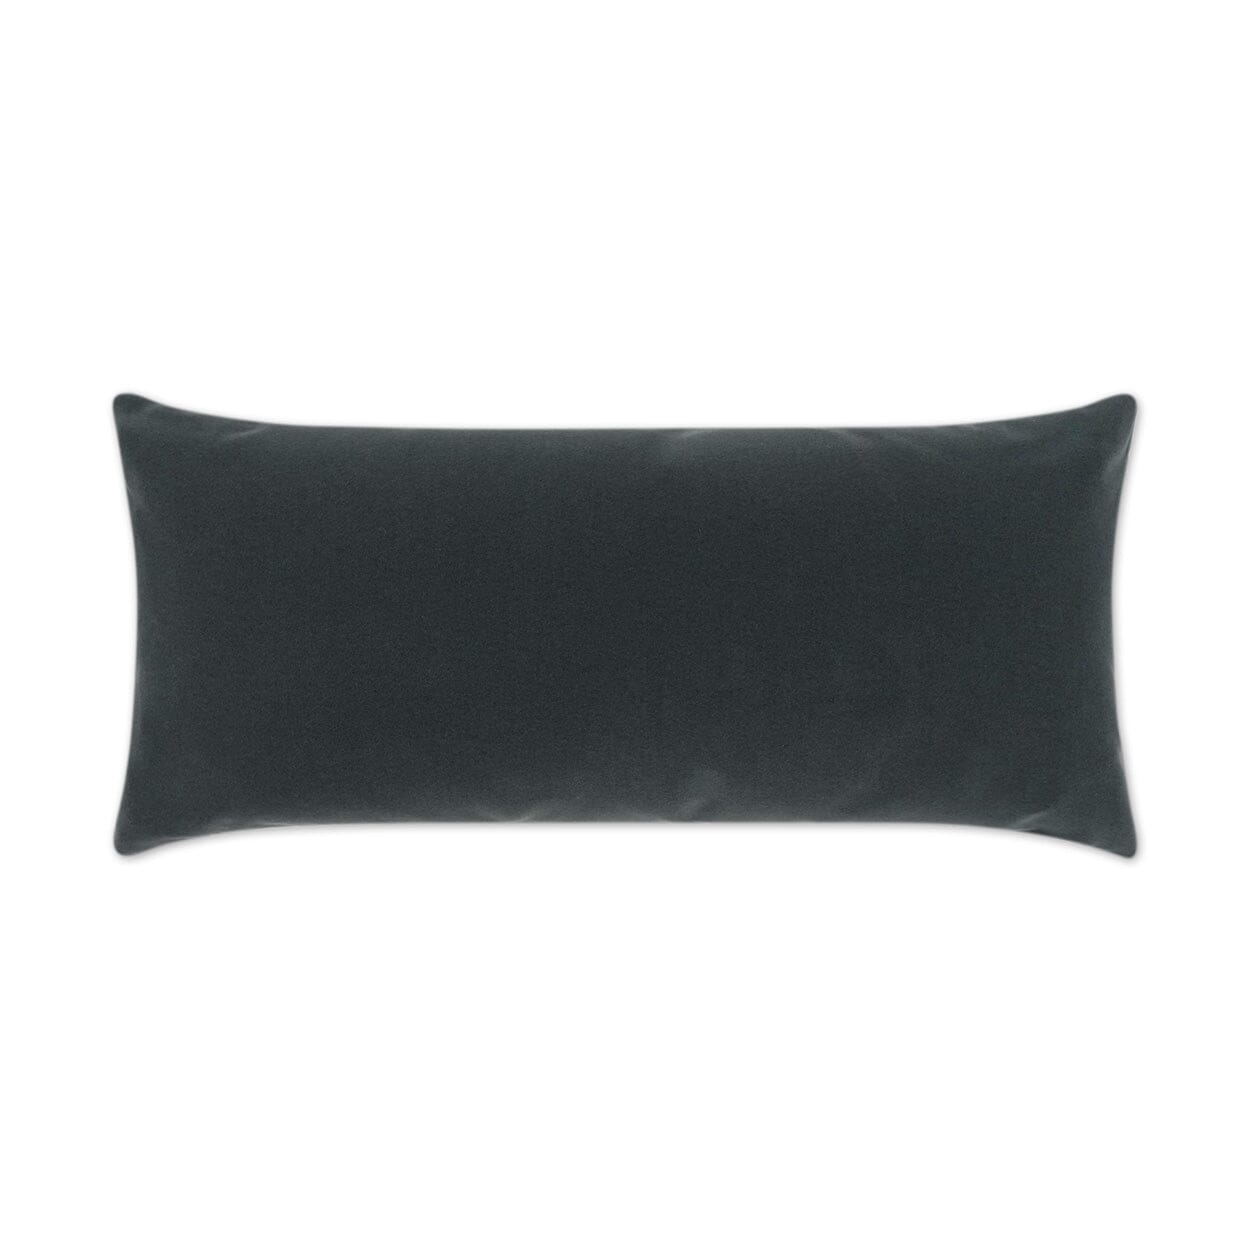 D.V. Kap 12" x 24" Outdoor Lumbar Pillow | Sundance Duo Charcoal Lumbar Pillows D.V Kap Outdoor